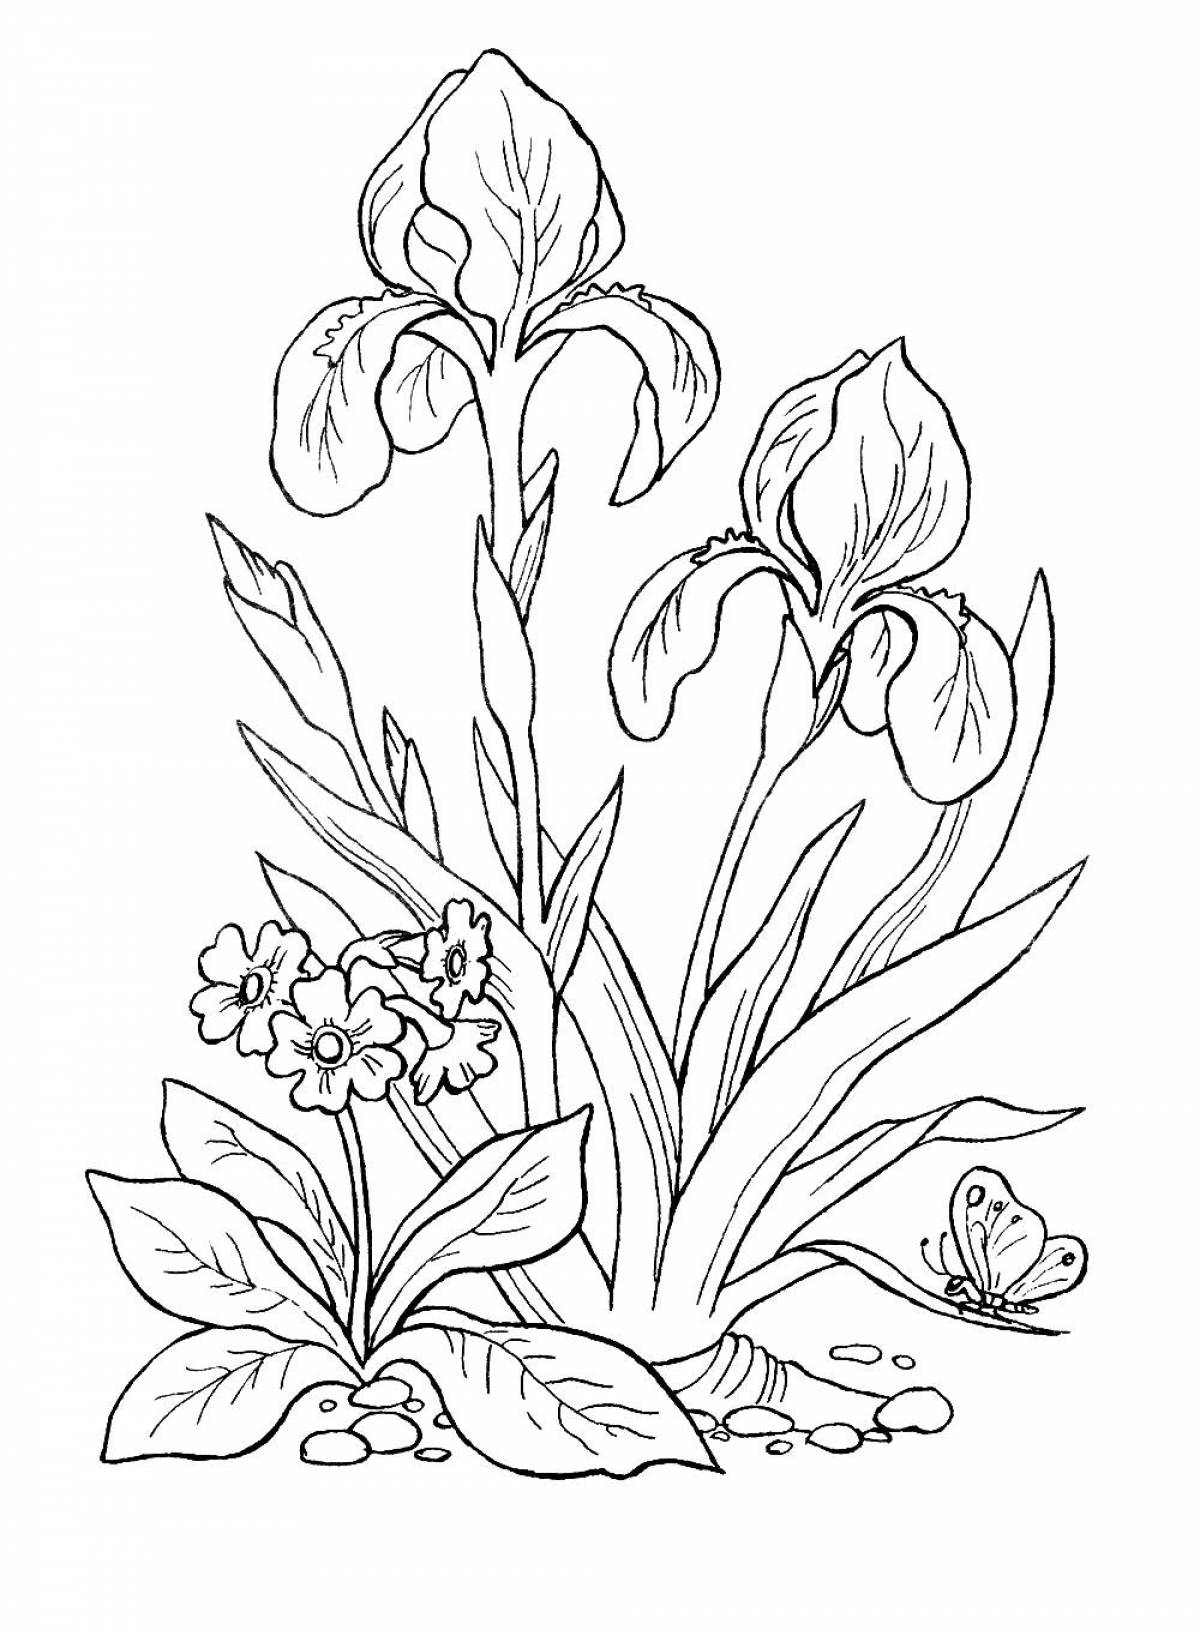 Primula and irises